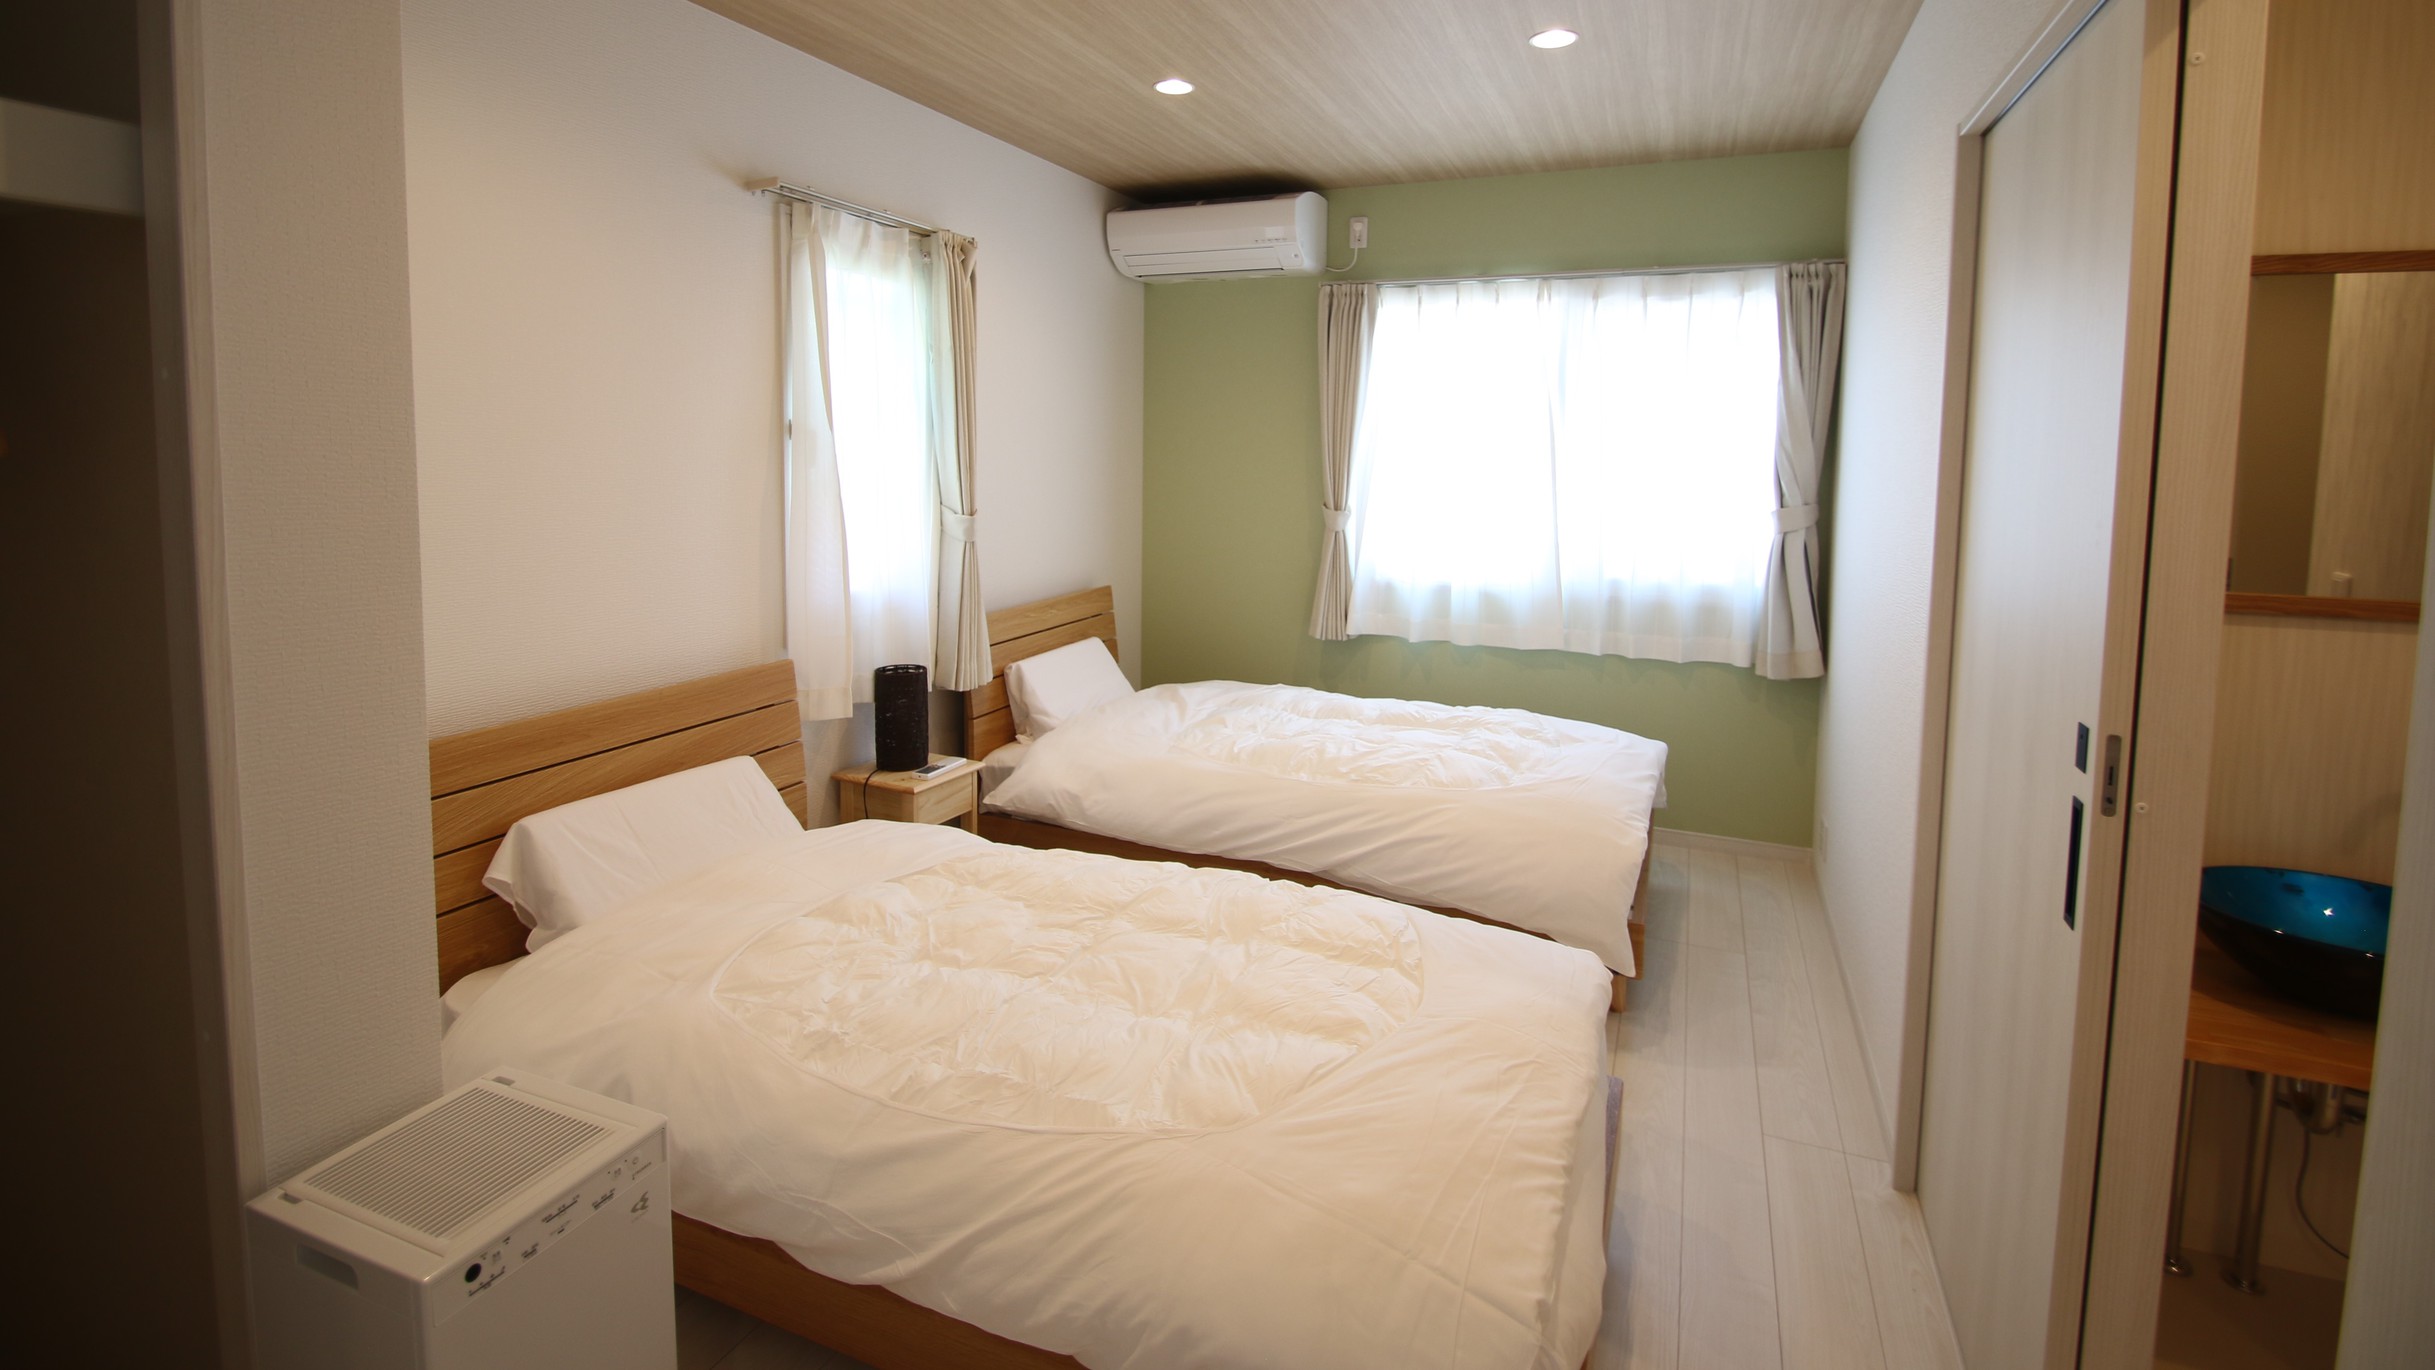 ◆各寝室にはエアコン・加湿空気清浄器をご用意しております